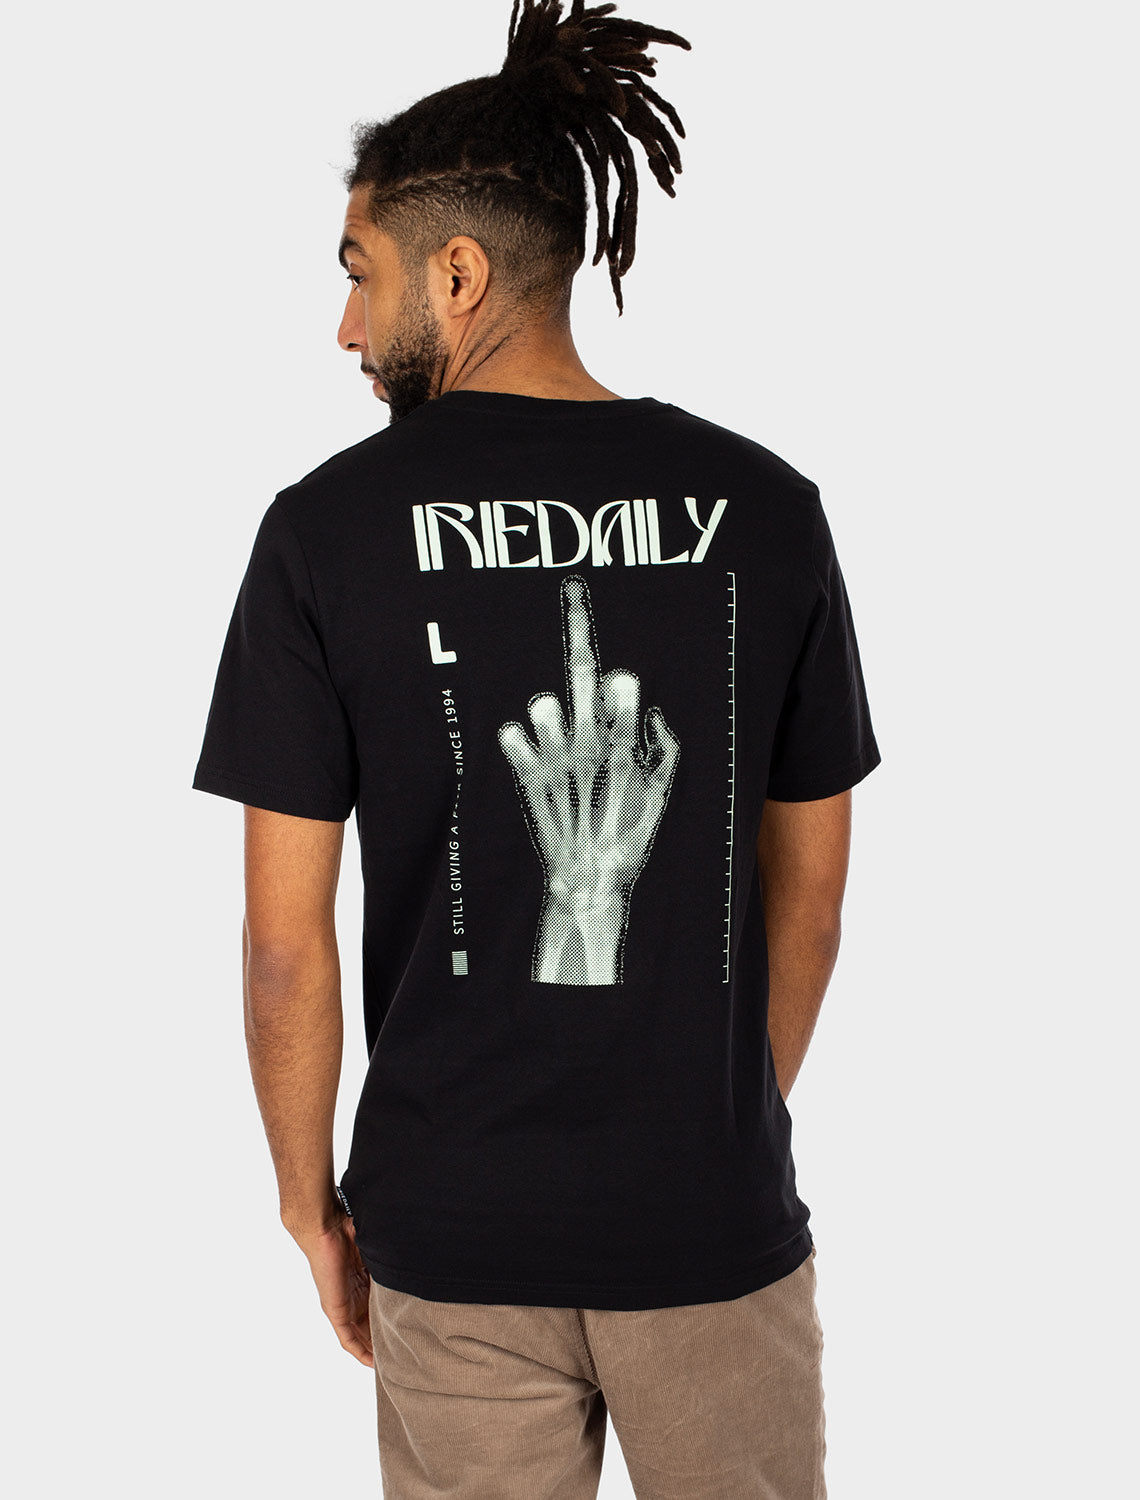 Iriedaily Rayfinger T-Shirt - Black